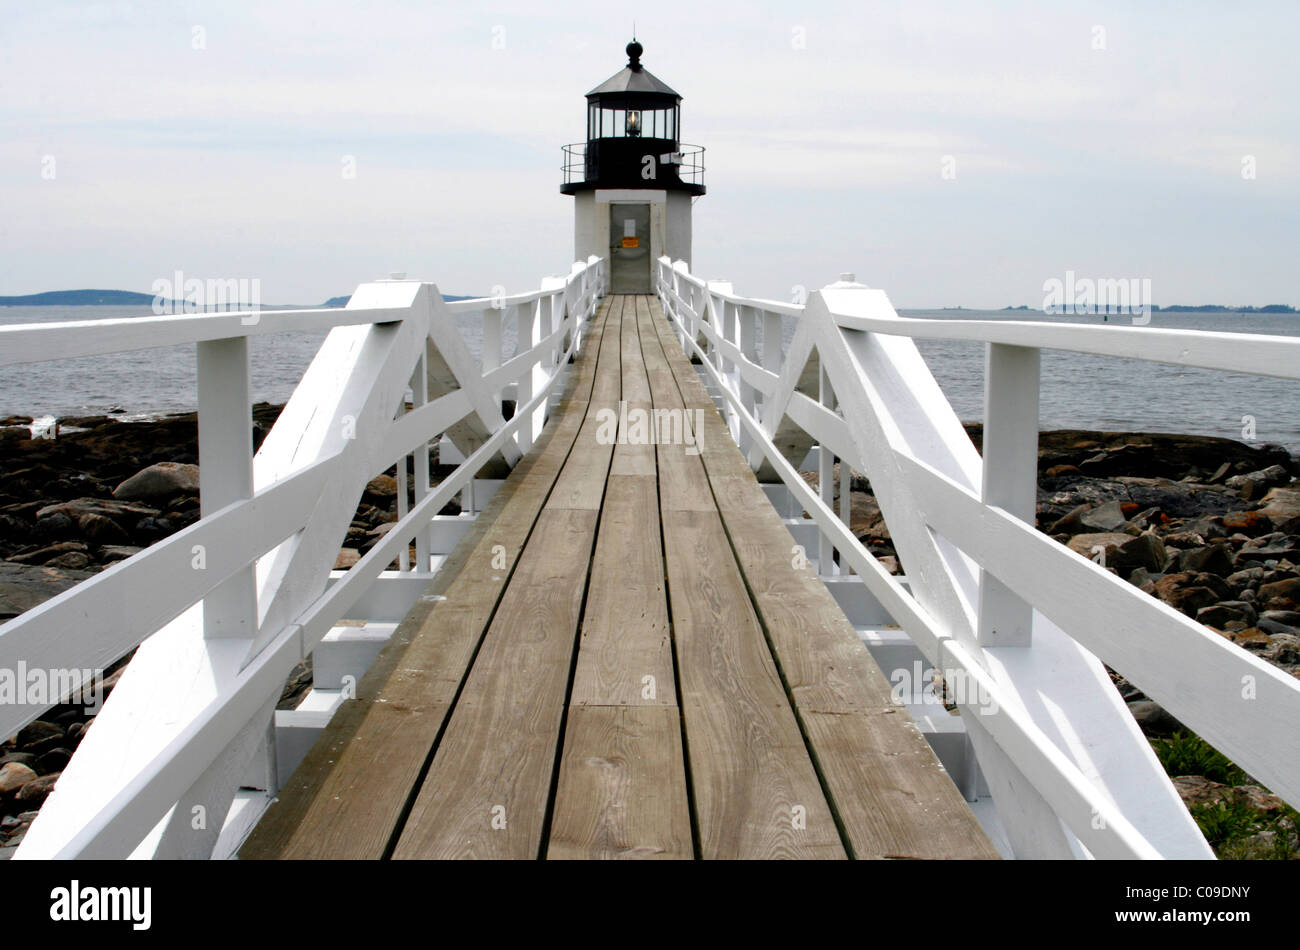 Marshall Point Lighthouse, Port Clyde, villaggio di pescatori, Oceano Atlantico, costa del Maine, New England, STATI UNITI D'AMERICA Foto Stock